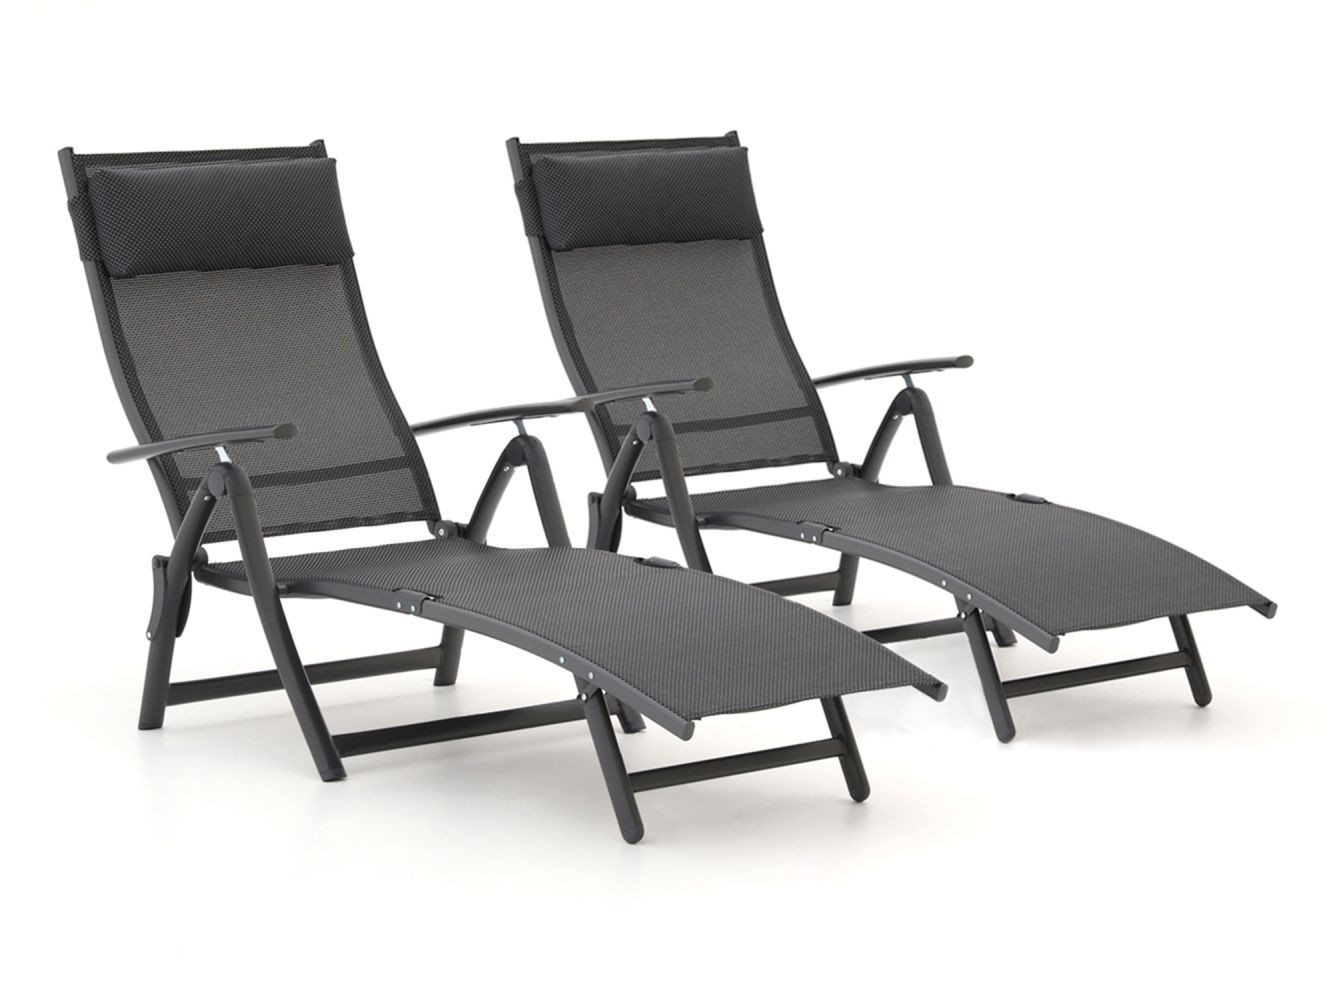 R&S Design Capri ligbed set 2-delig - Laagste prijsgarantie!